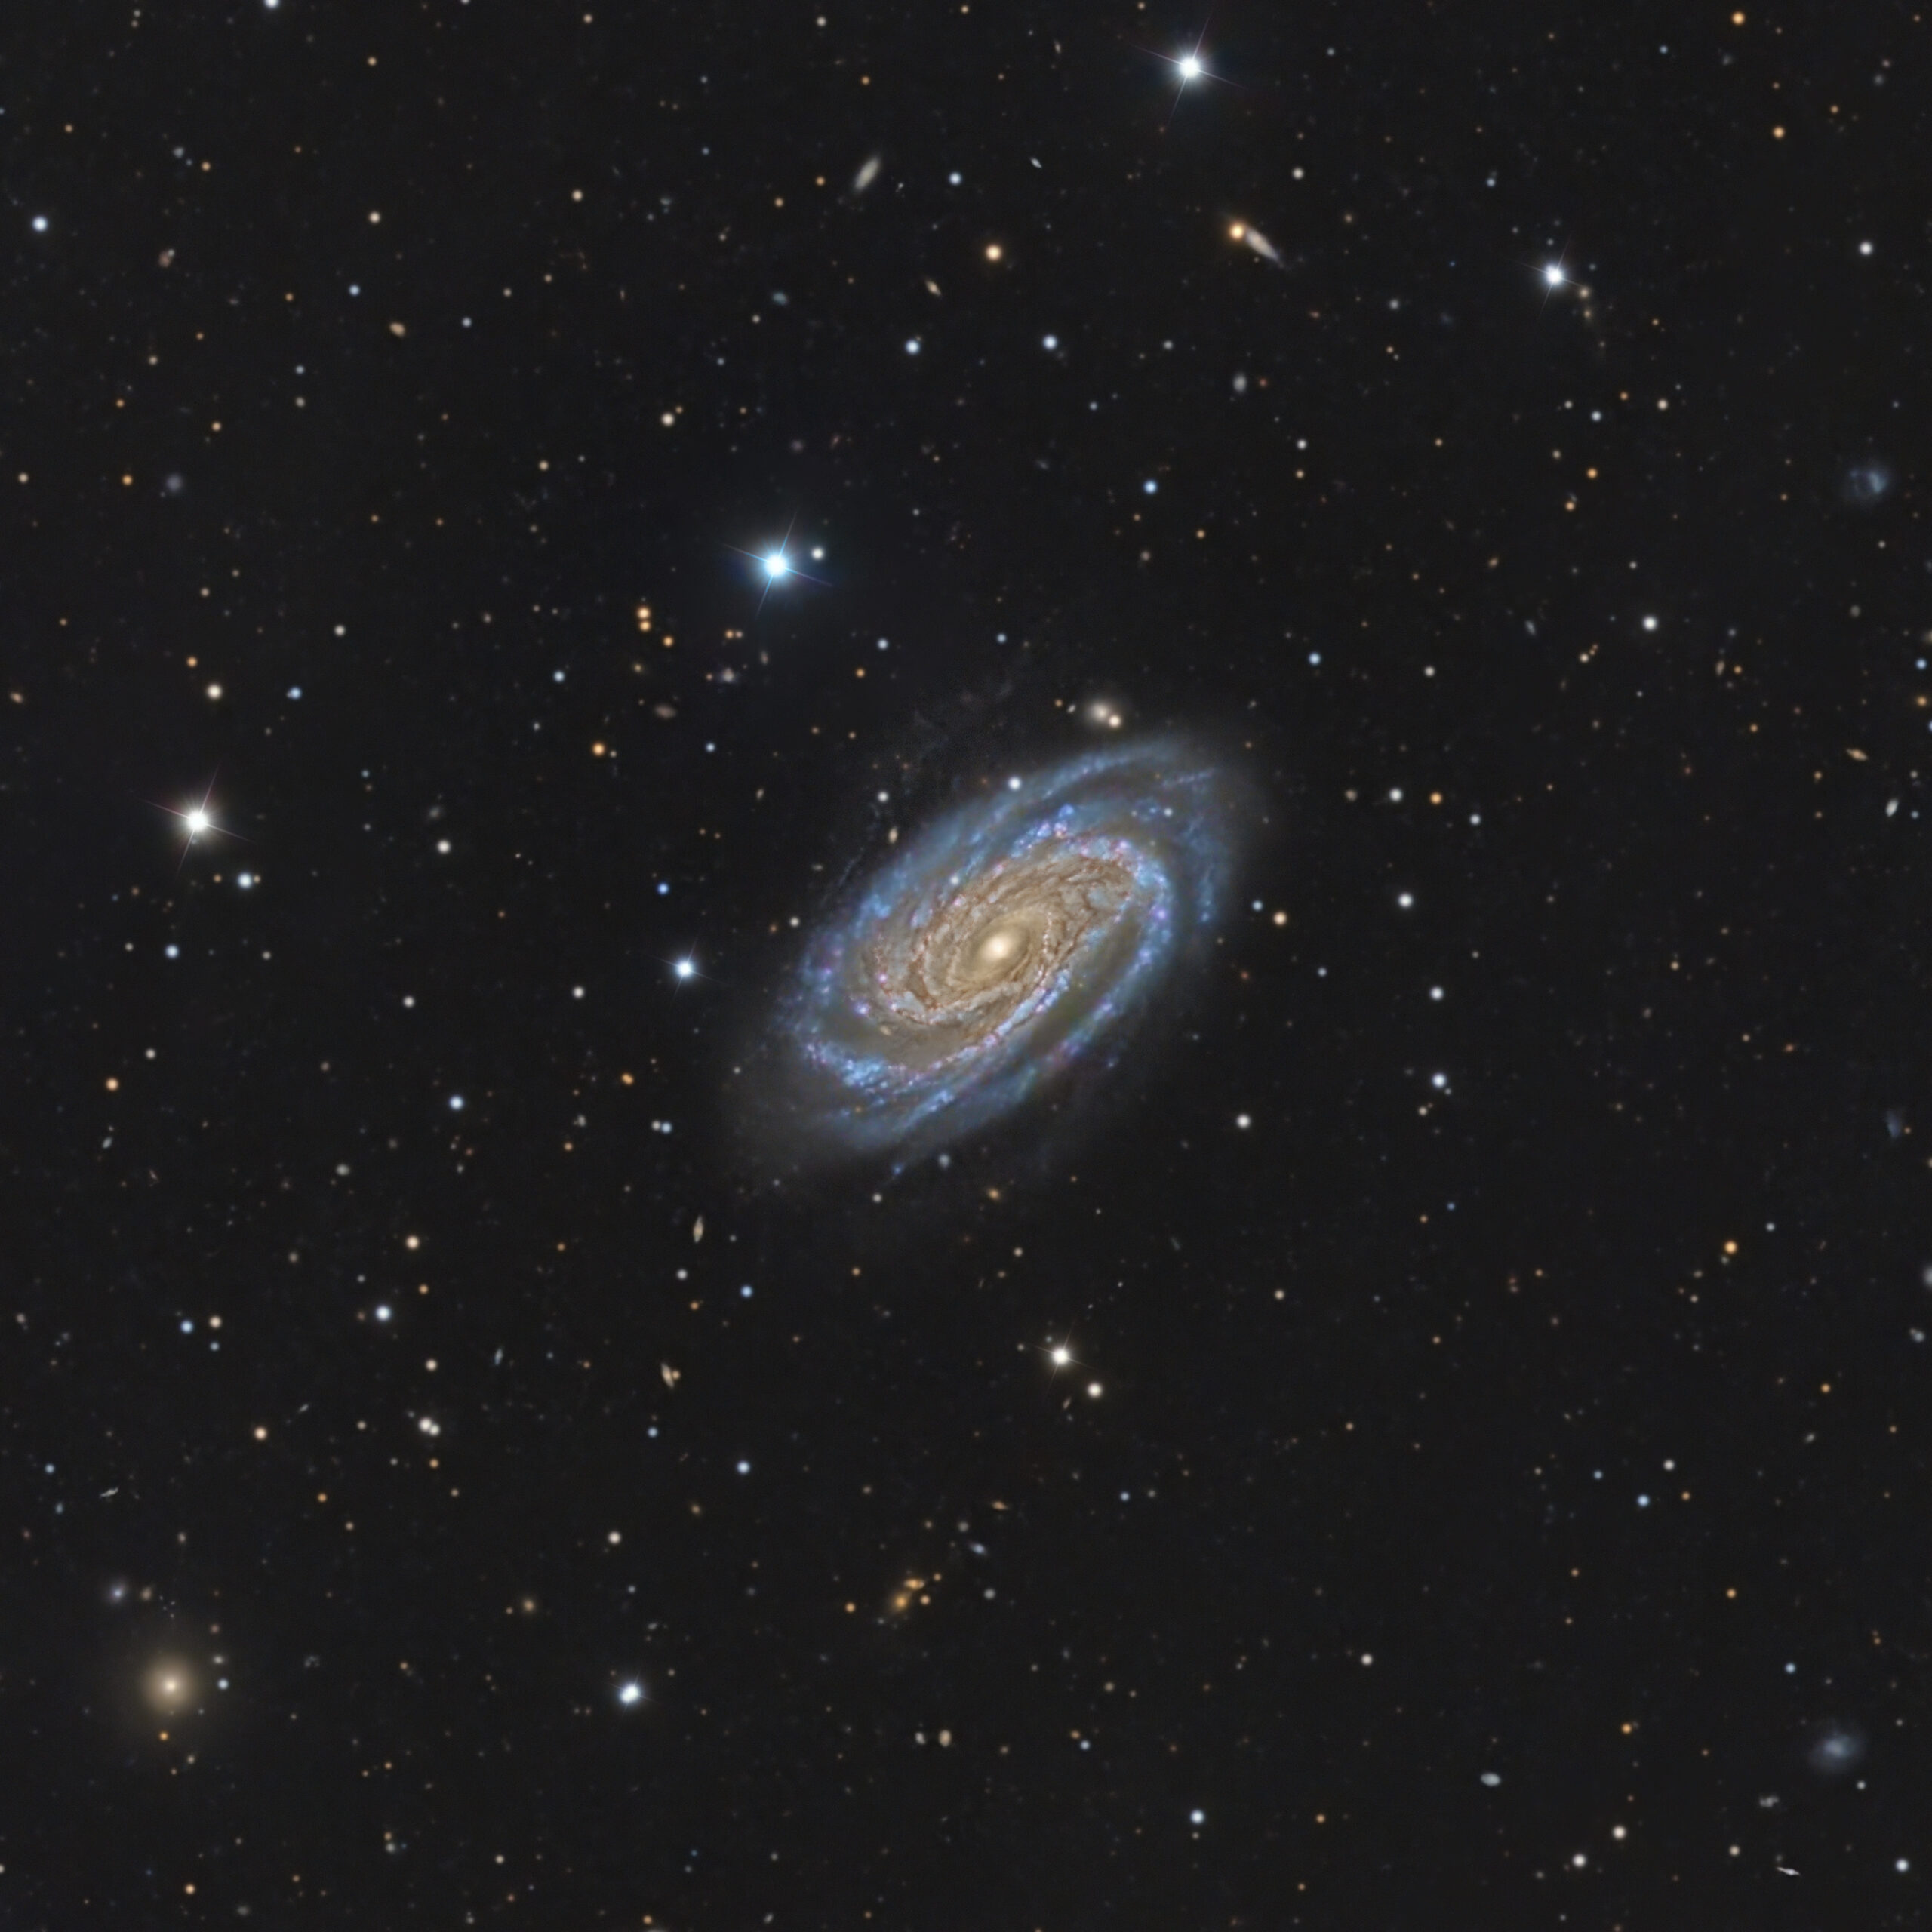 NGC 7038